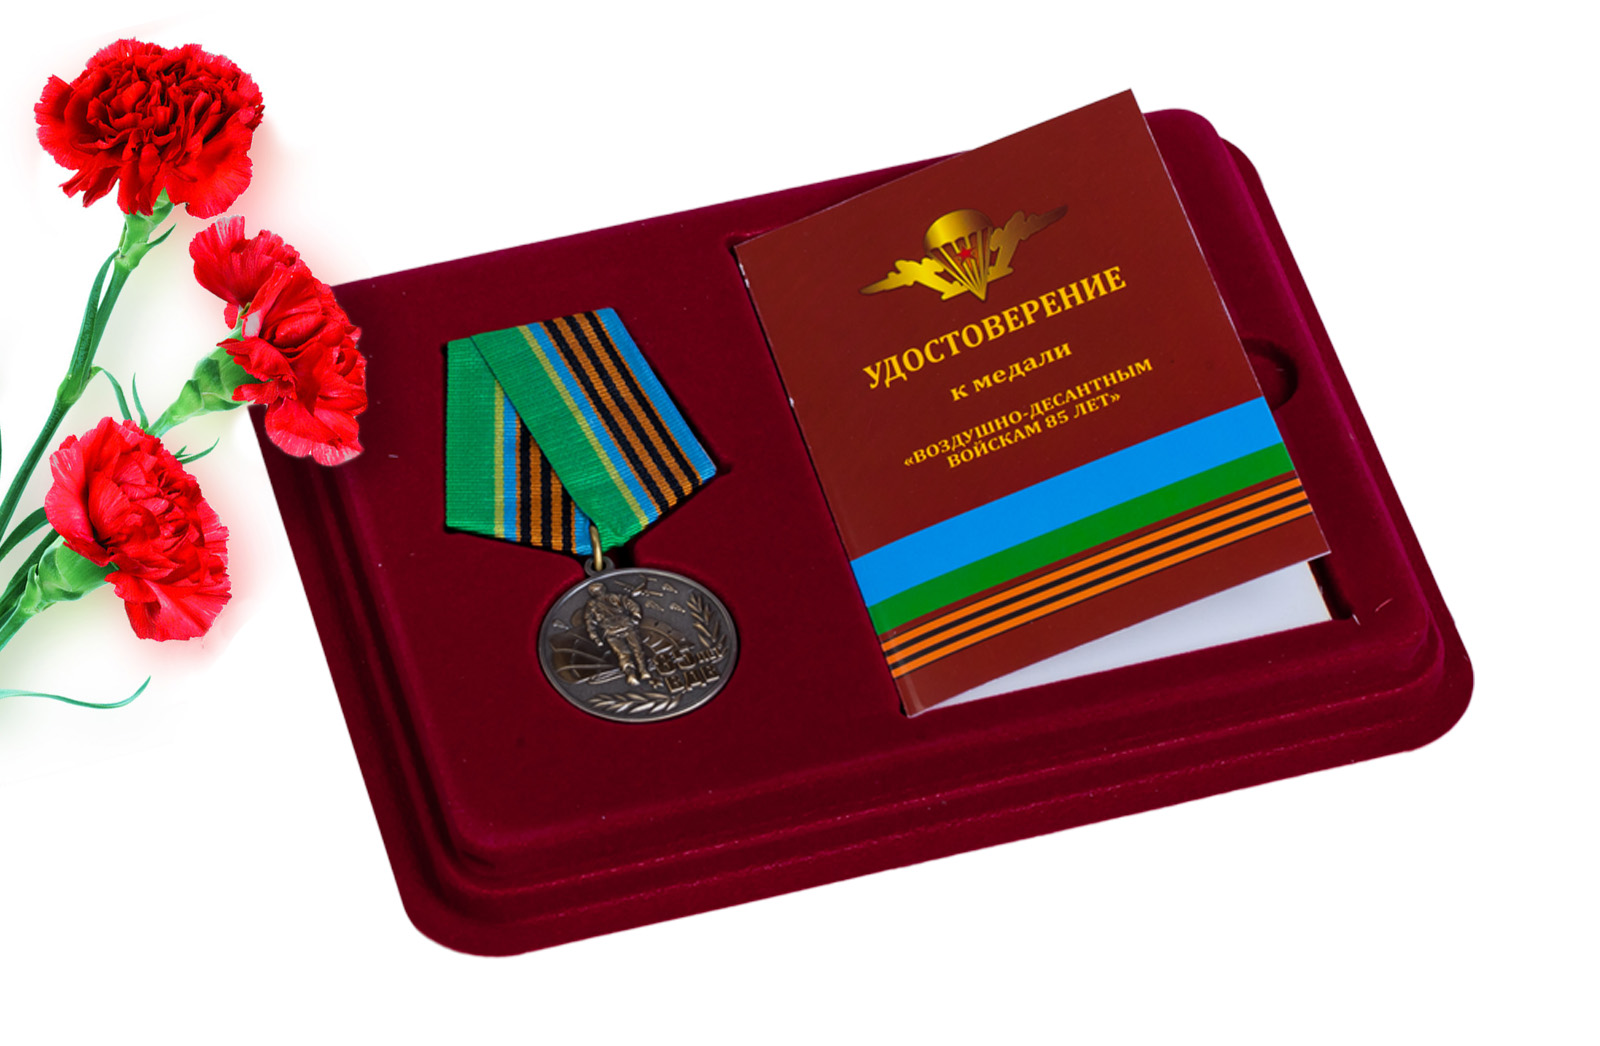 Купить медаль 85 лет ВДВ в футляре с удостоверением выгодно онлайн